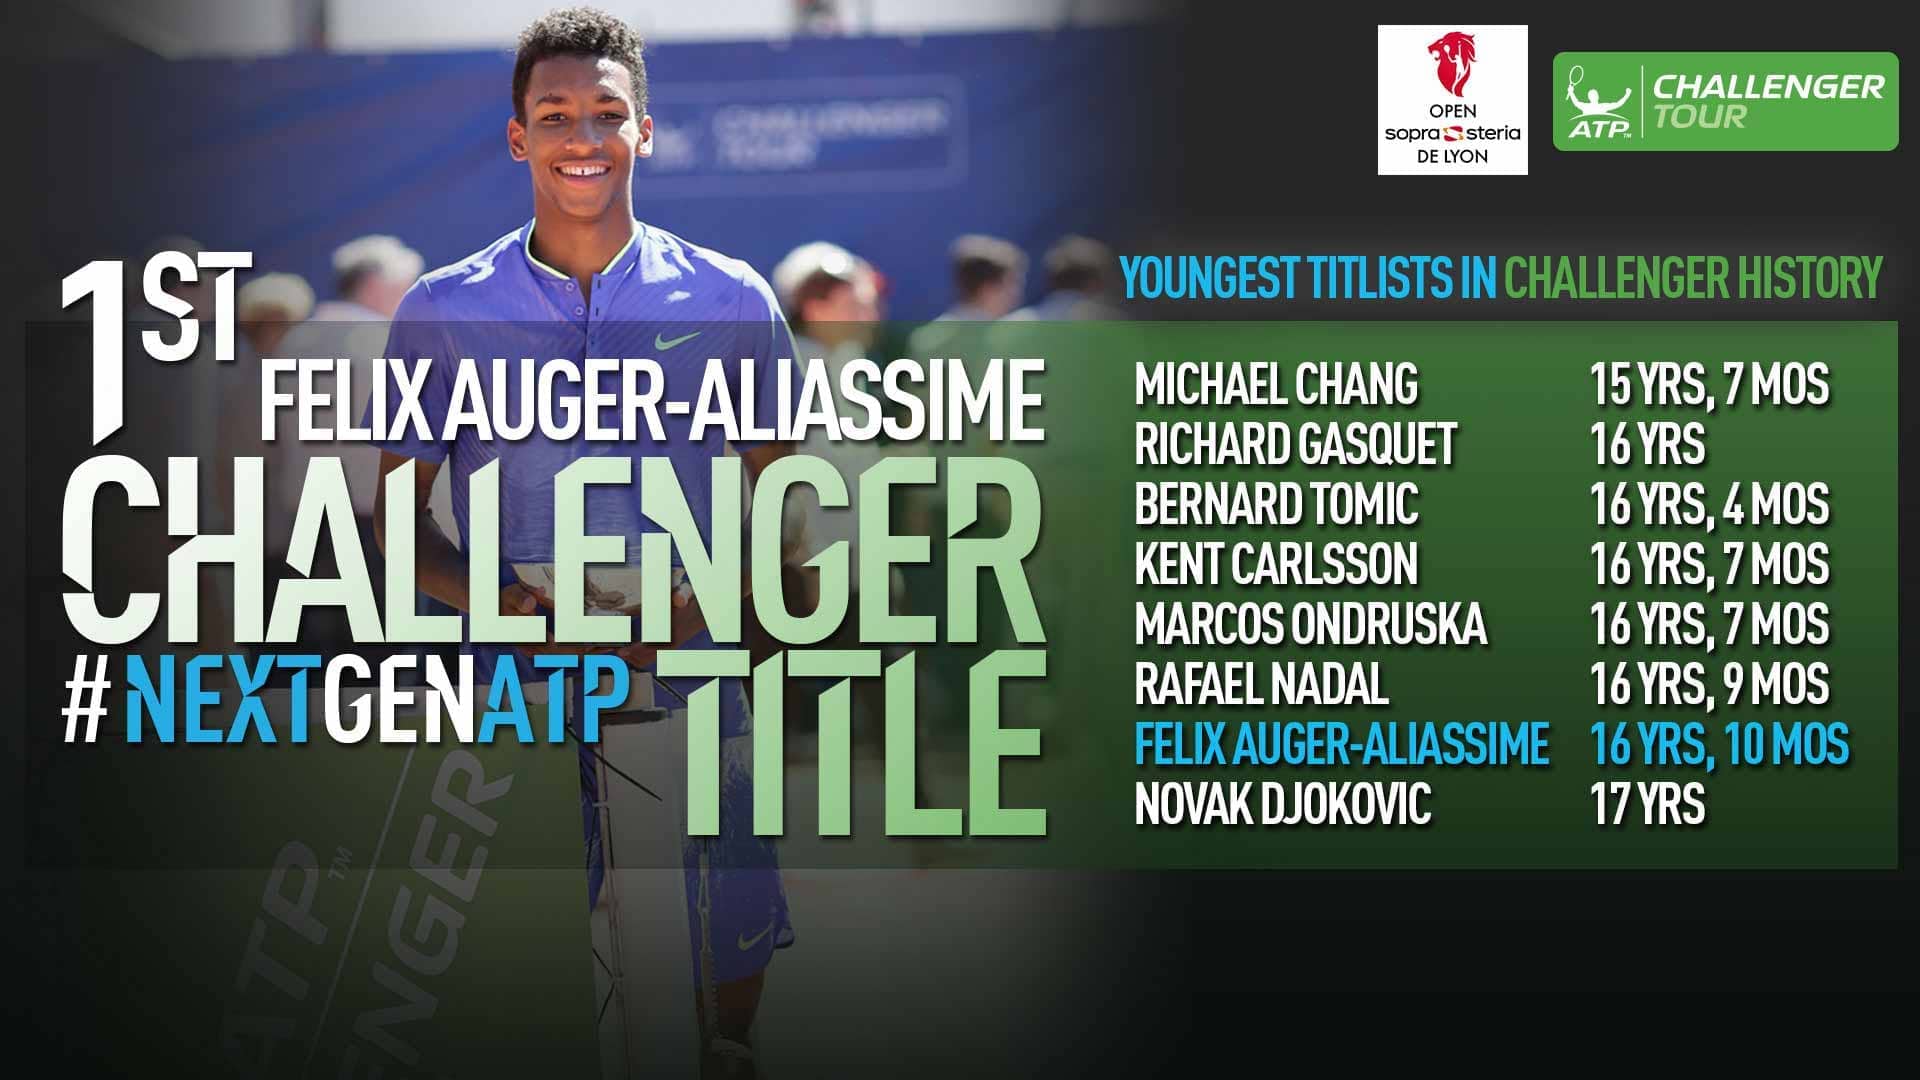 Feliz Auger-Aliassime se une a la elite al conseguir su primer título ATP Challenger Tour en Lyon, Francia.